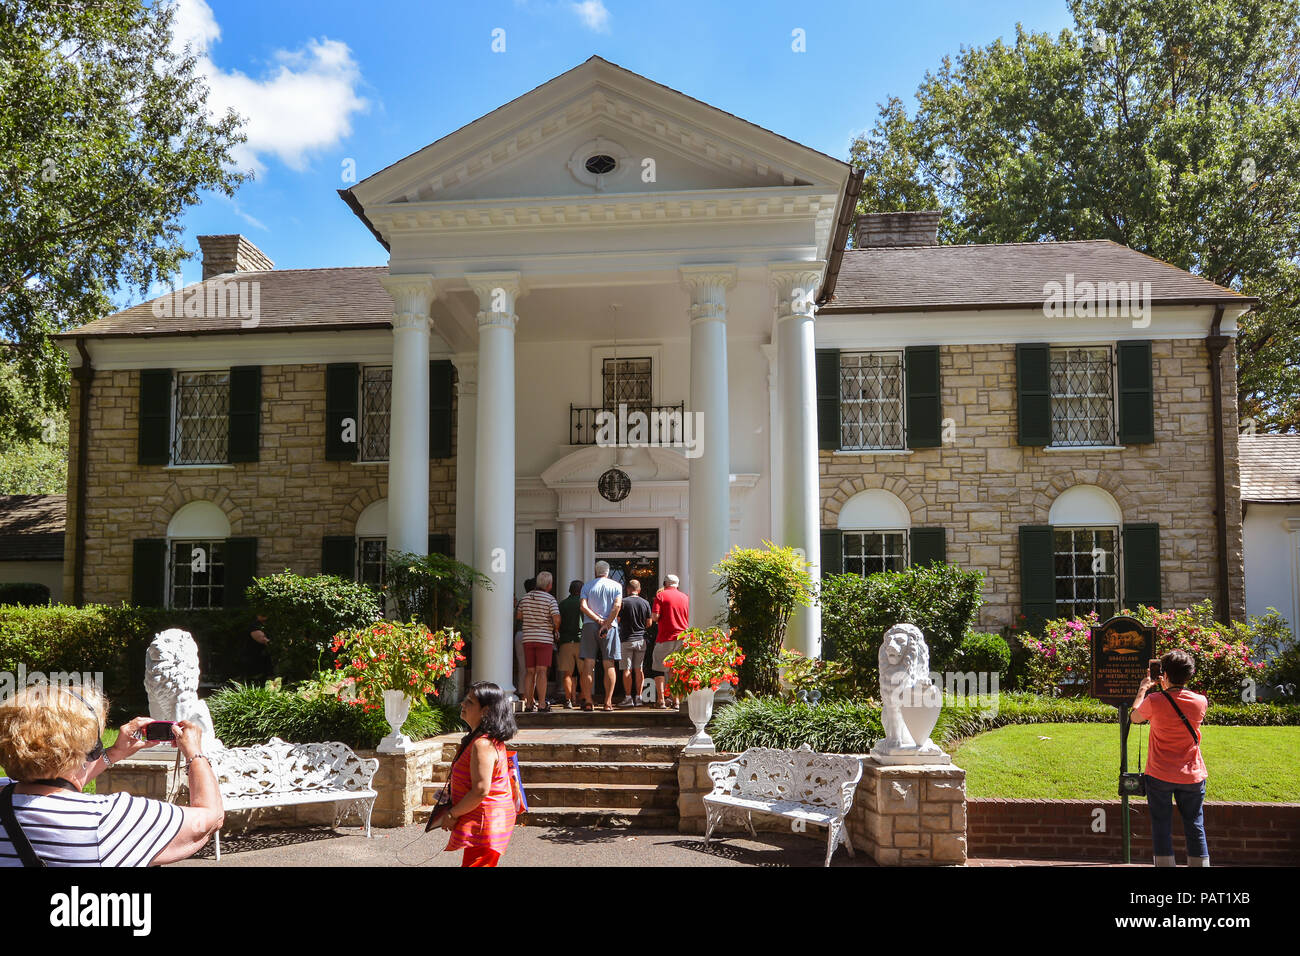 Memphis TN/USA - sett. 21, 2017: turisti visitano Elvis Presley's Graceland Mansion. Il Mansion è nel Registro Nazionale dei Luoghi Storici. Foto Stock